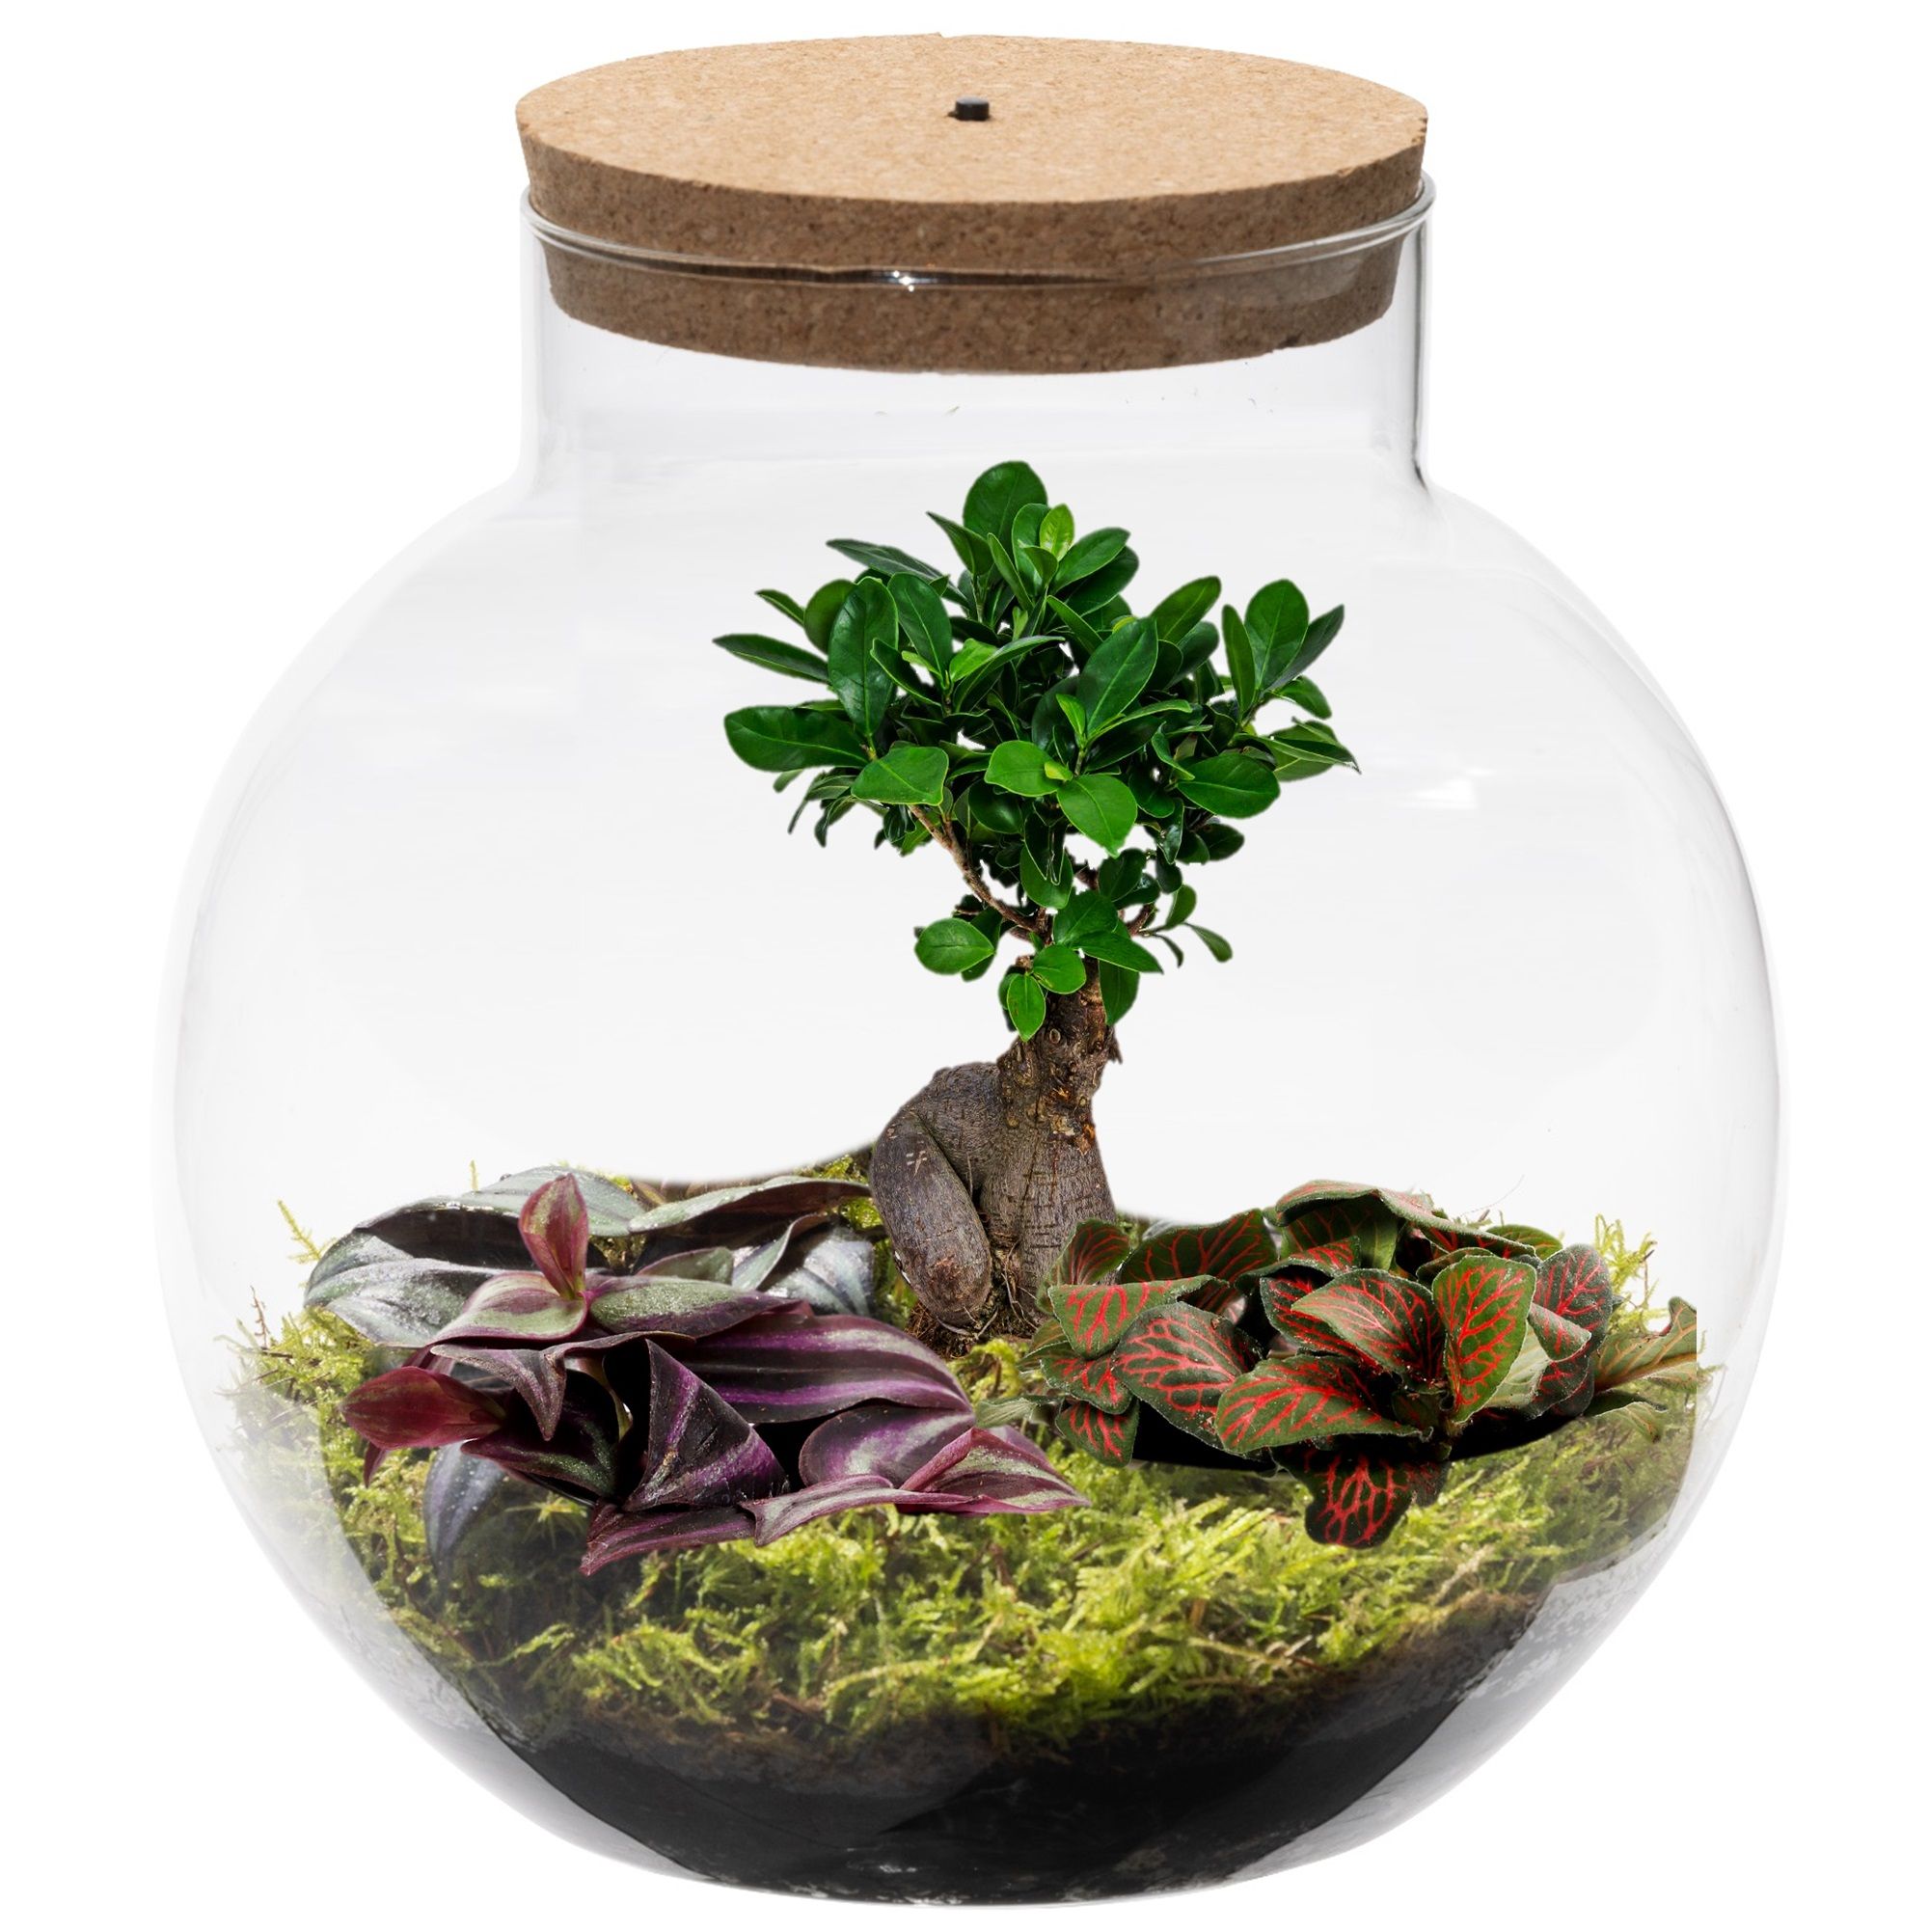 vdvelde.com - Ökosystem Pflanze im Glas mit Lampe - Ecoworld Bonsai Biodome - Pflanzen terrarium - 1 Bonsai und 2 farbige Terrarium pflanzen - Kugelförmiges Glas - Höhe 25 cm